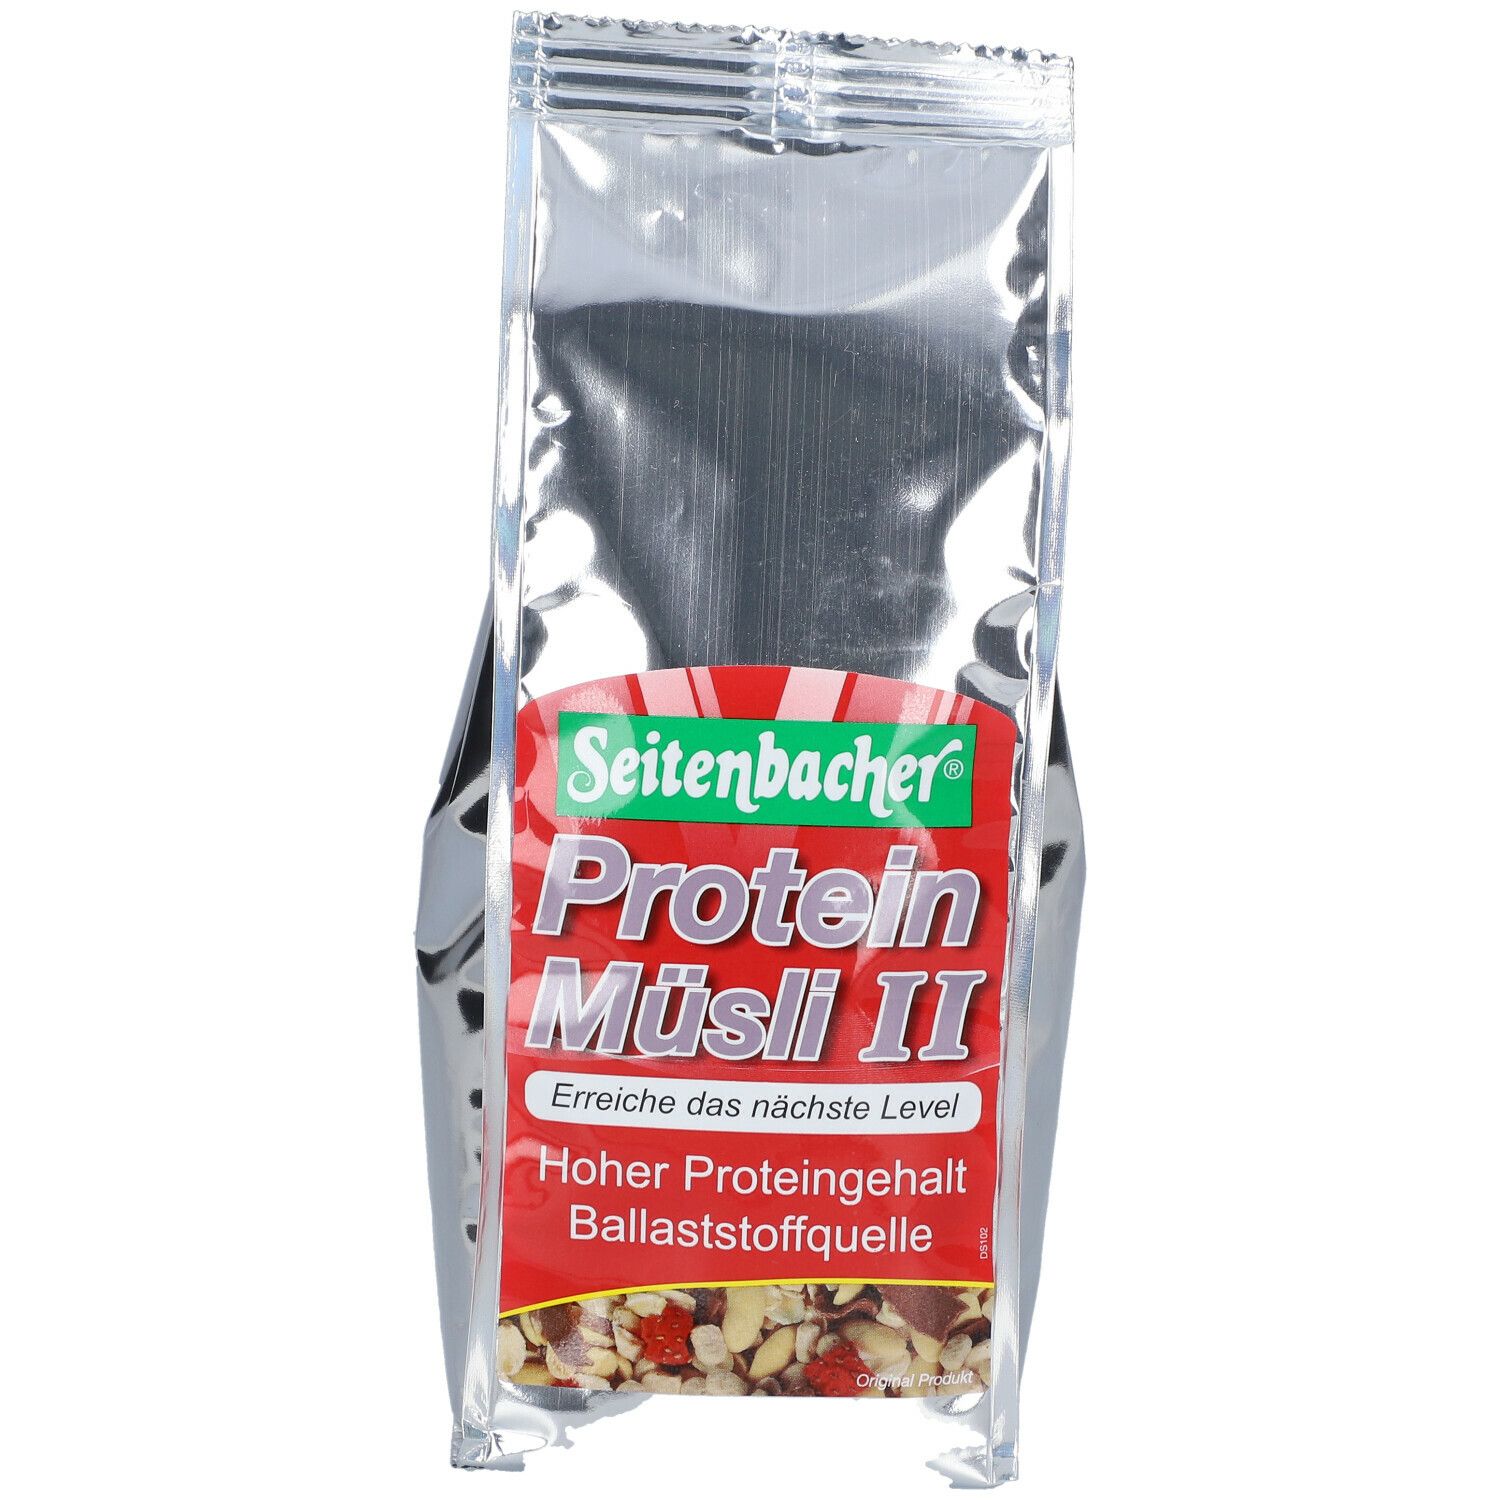 Seitenbacher® Protein Müsli II